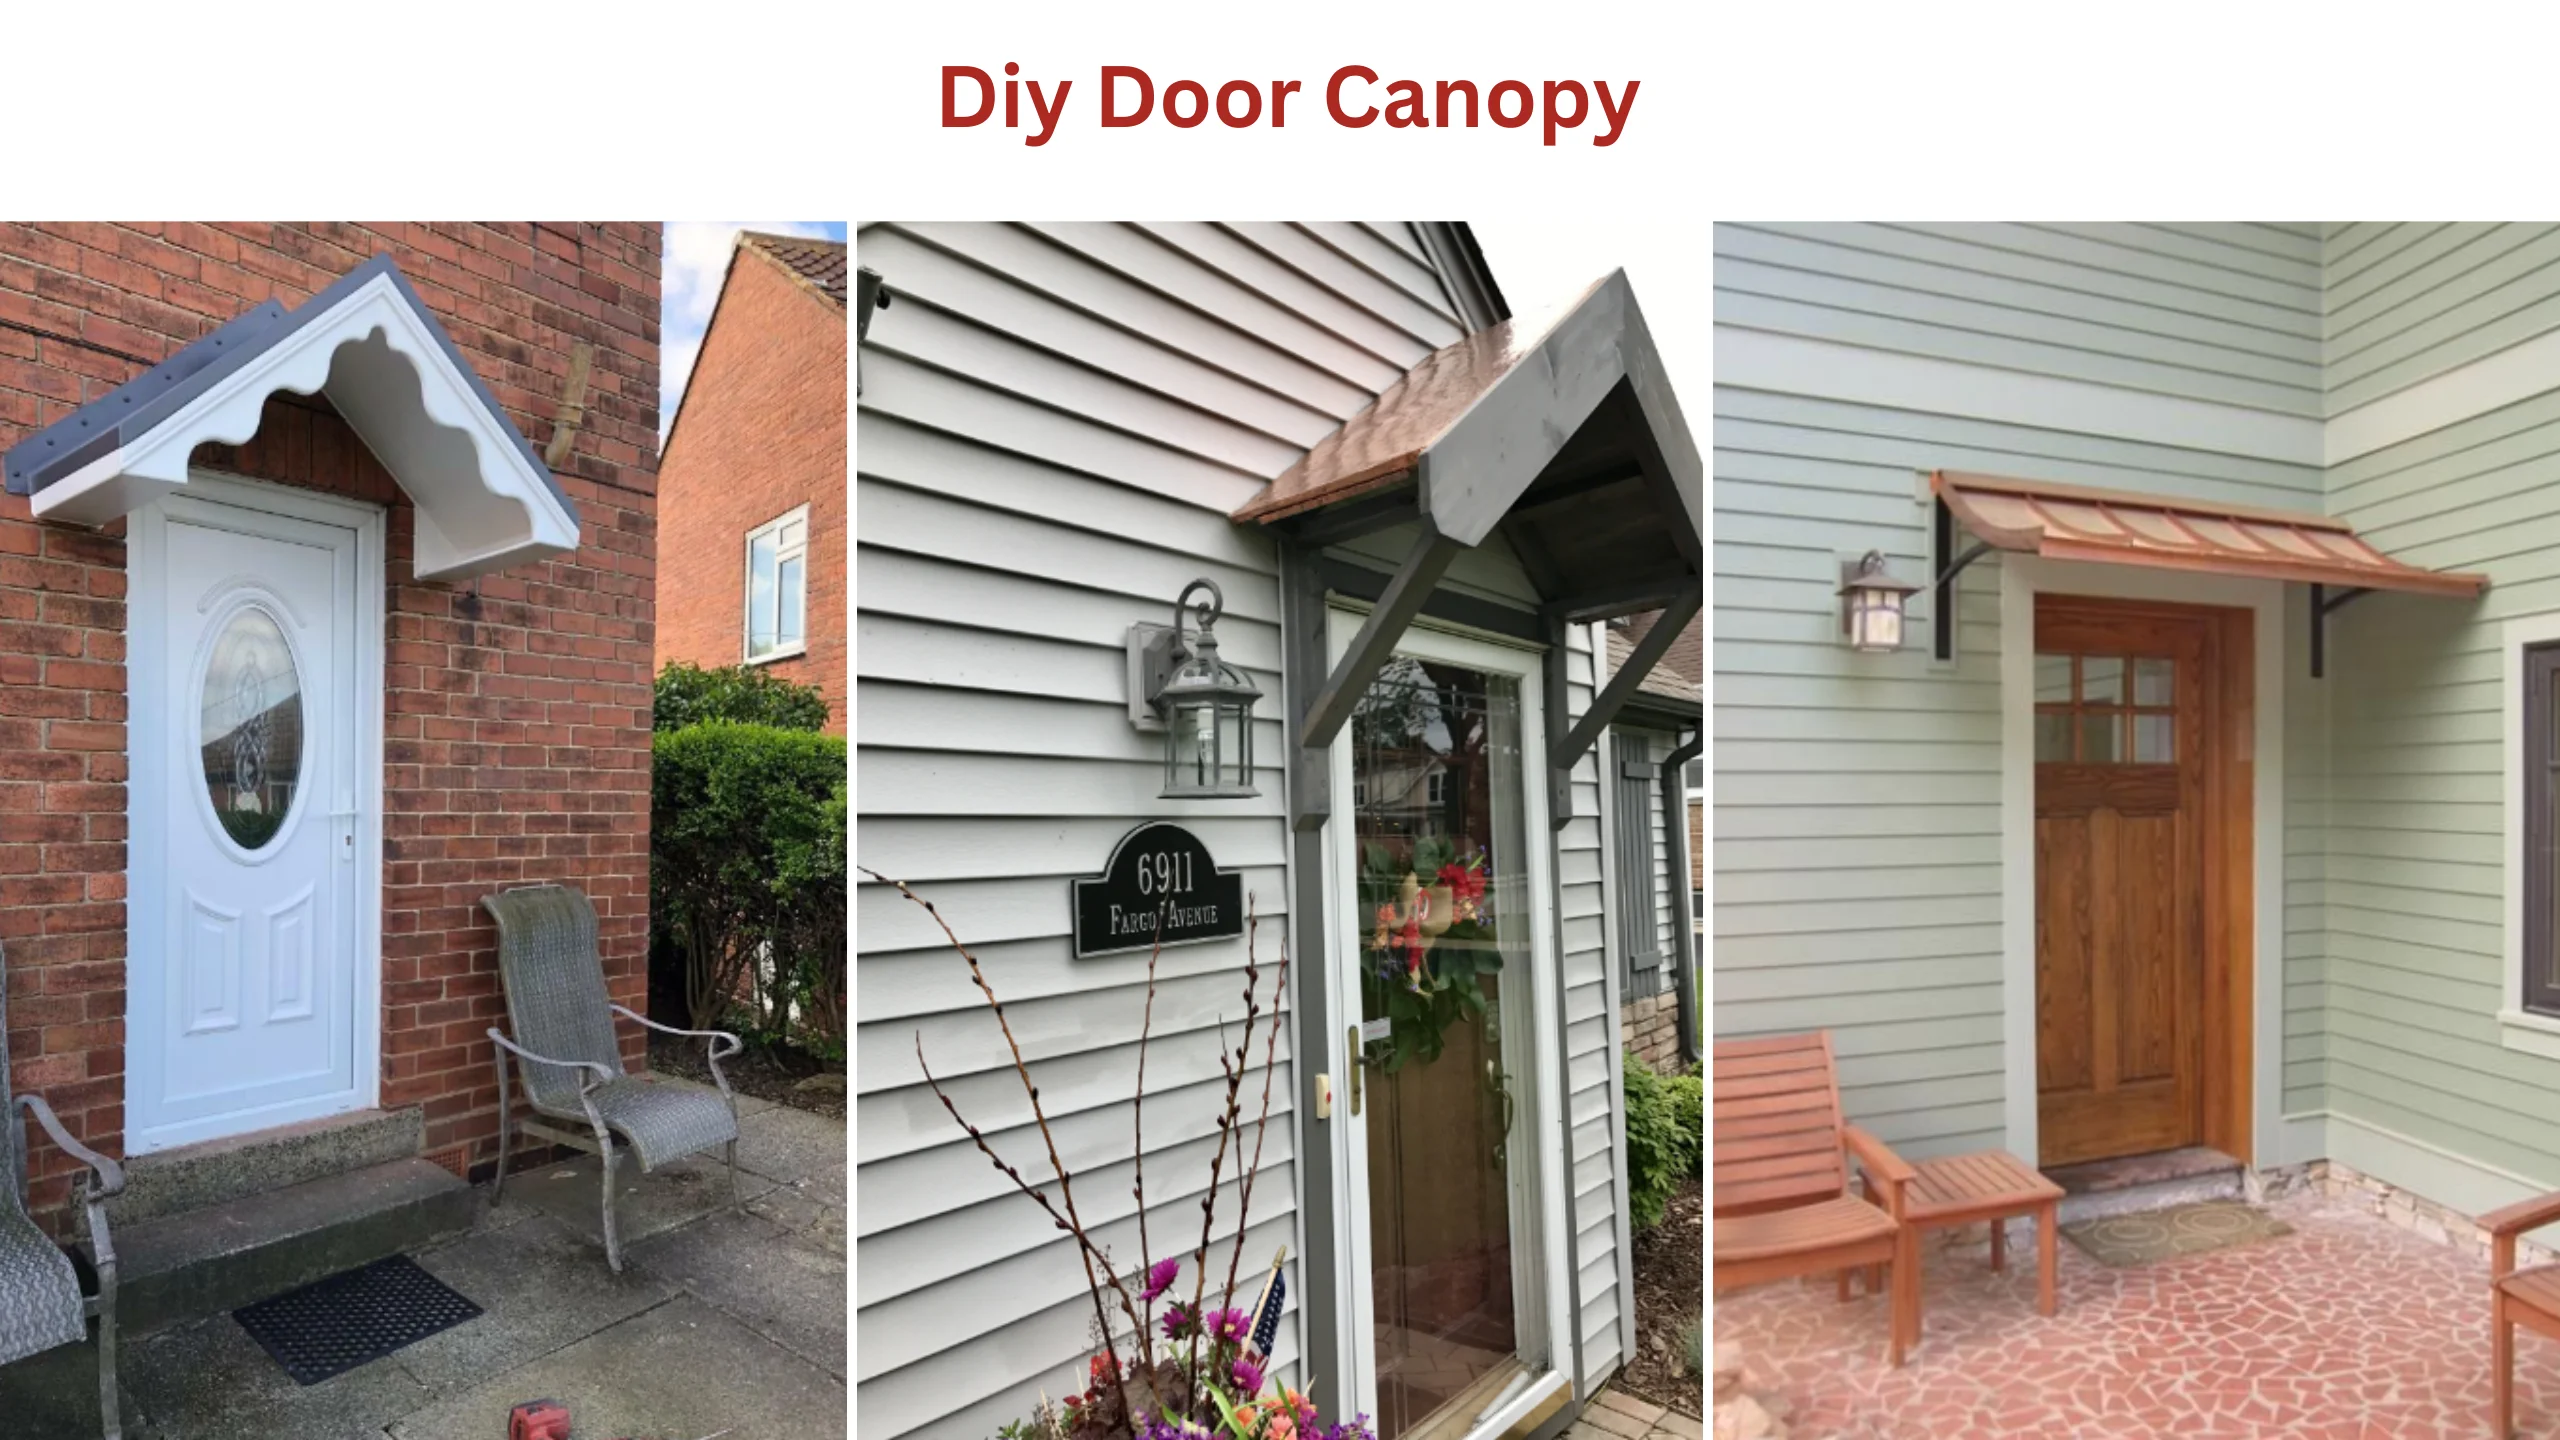 Diy door canopy